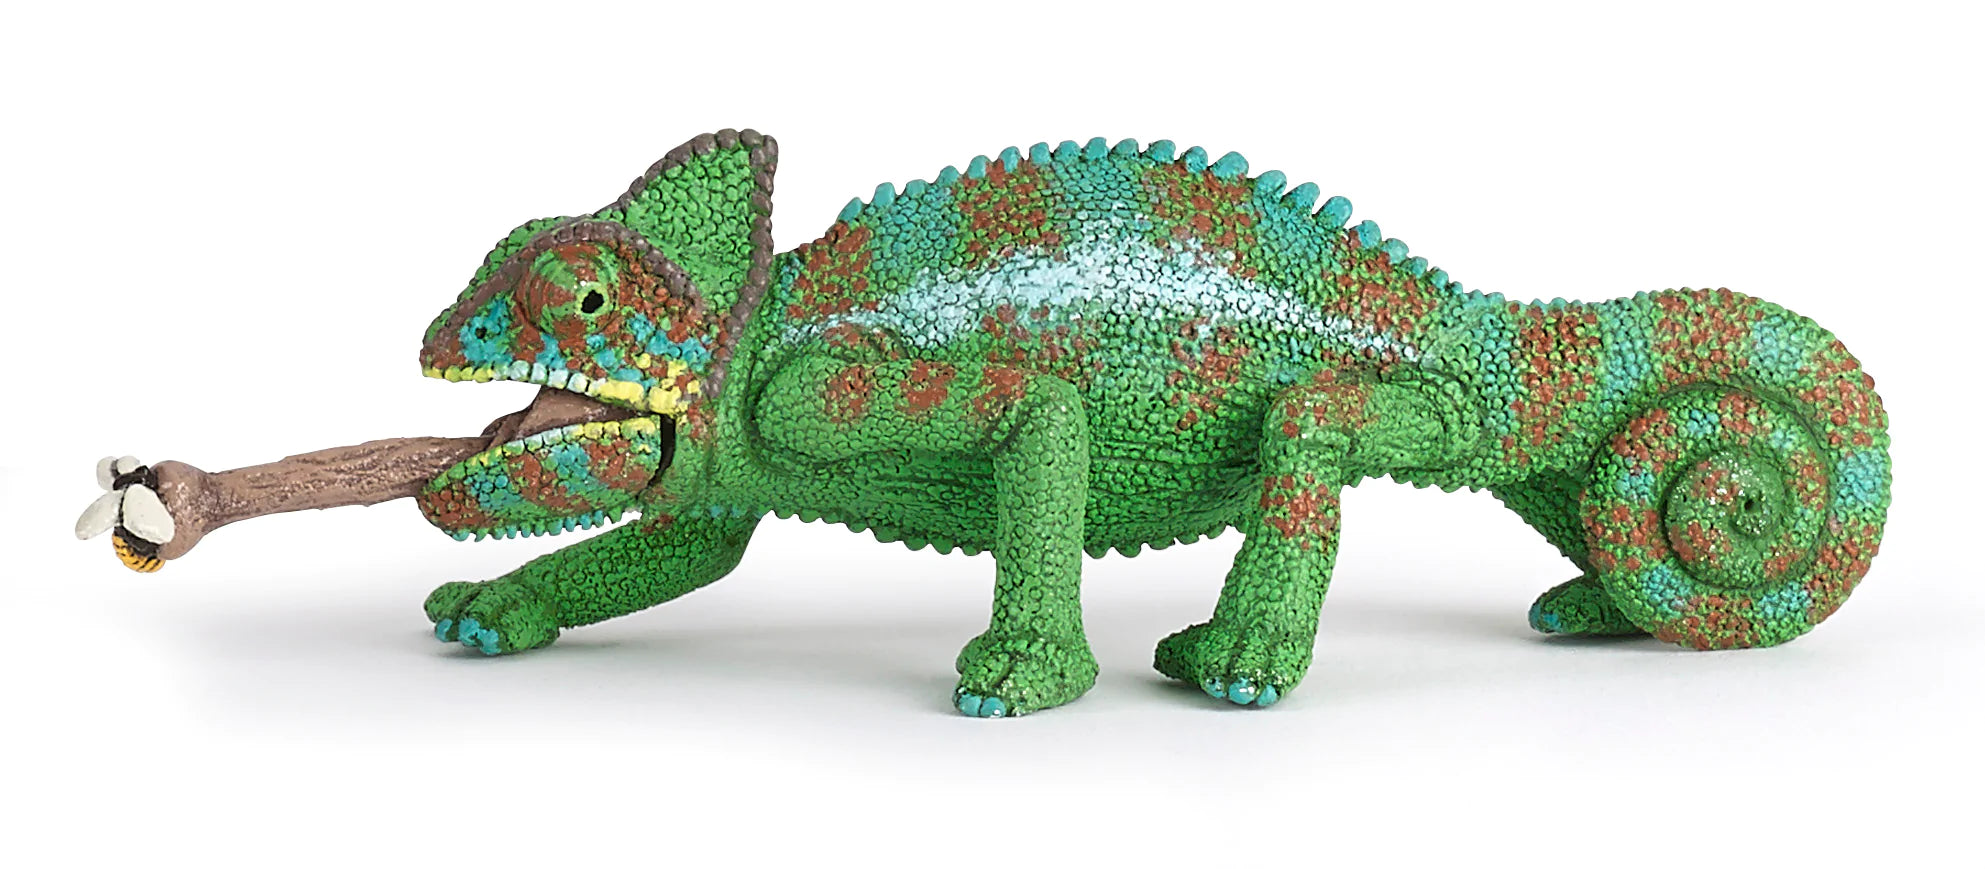 Figurine - Chameleon